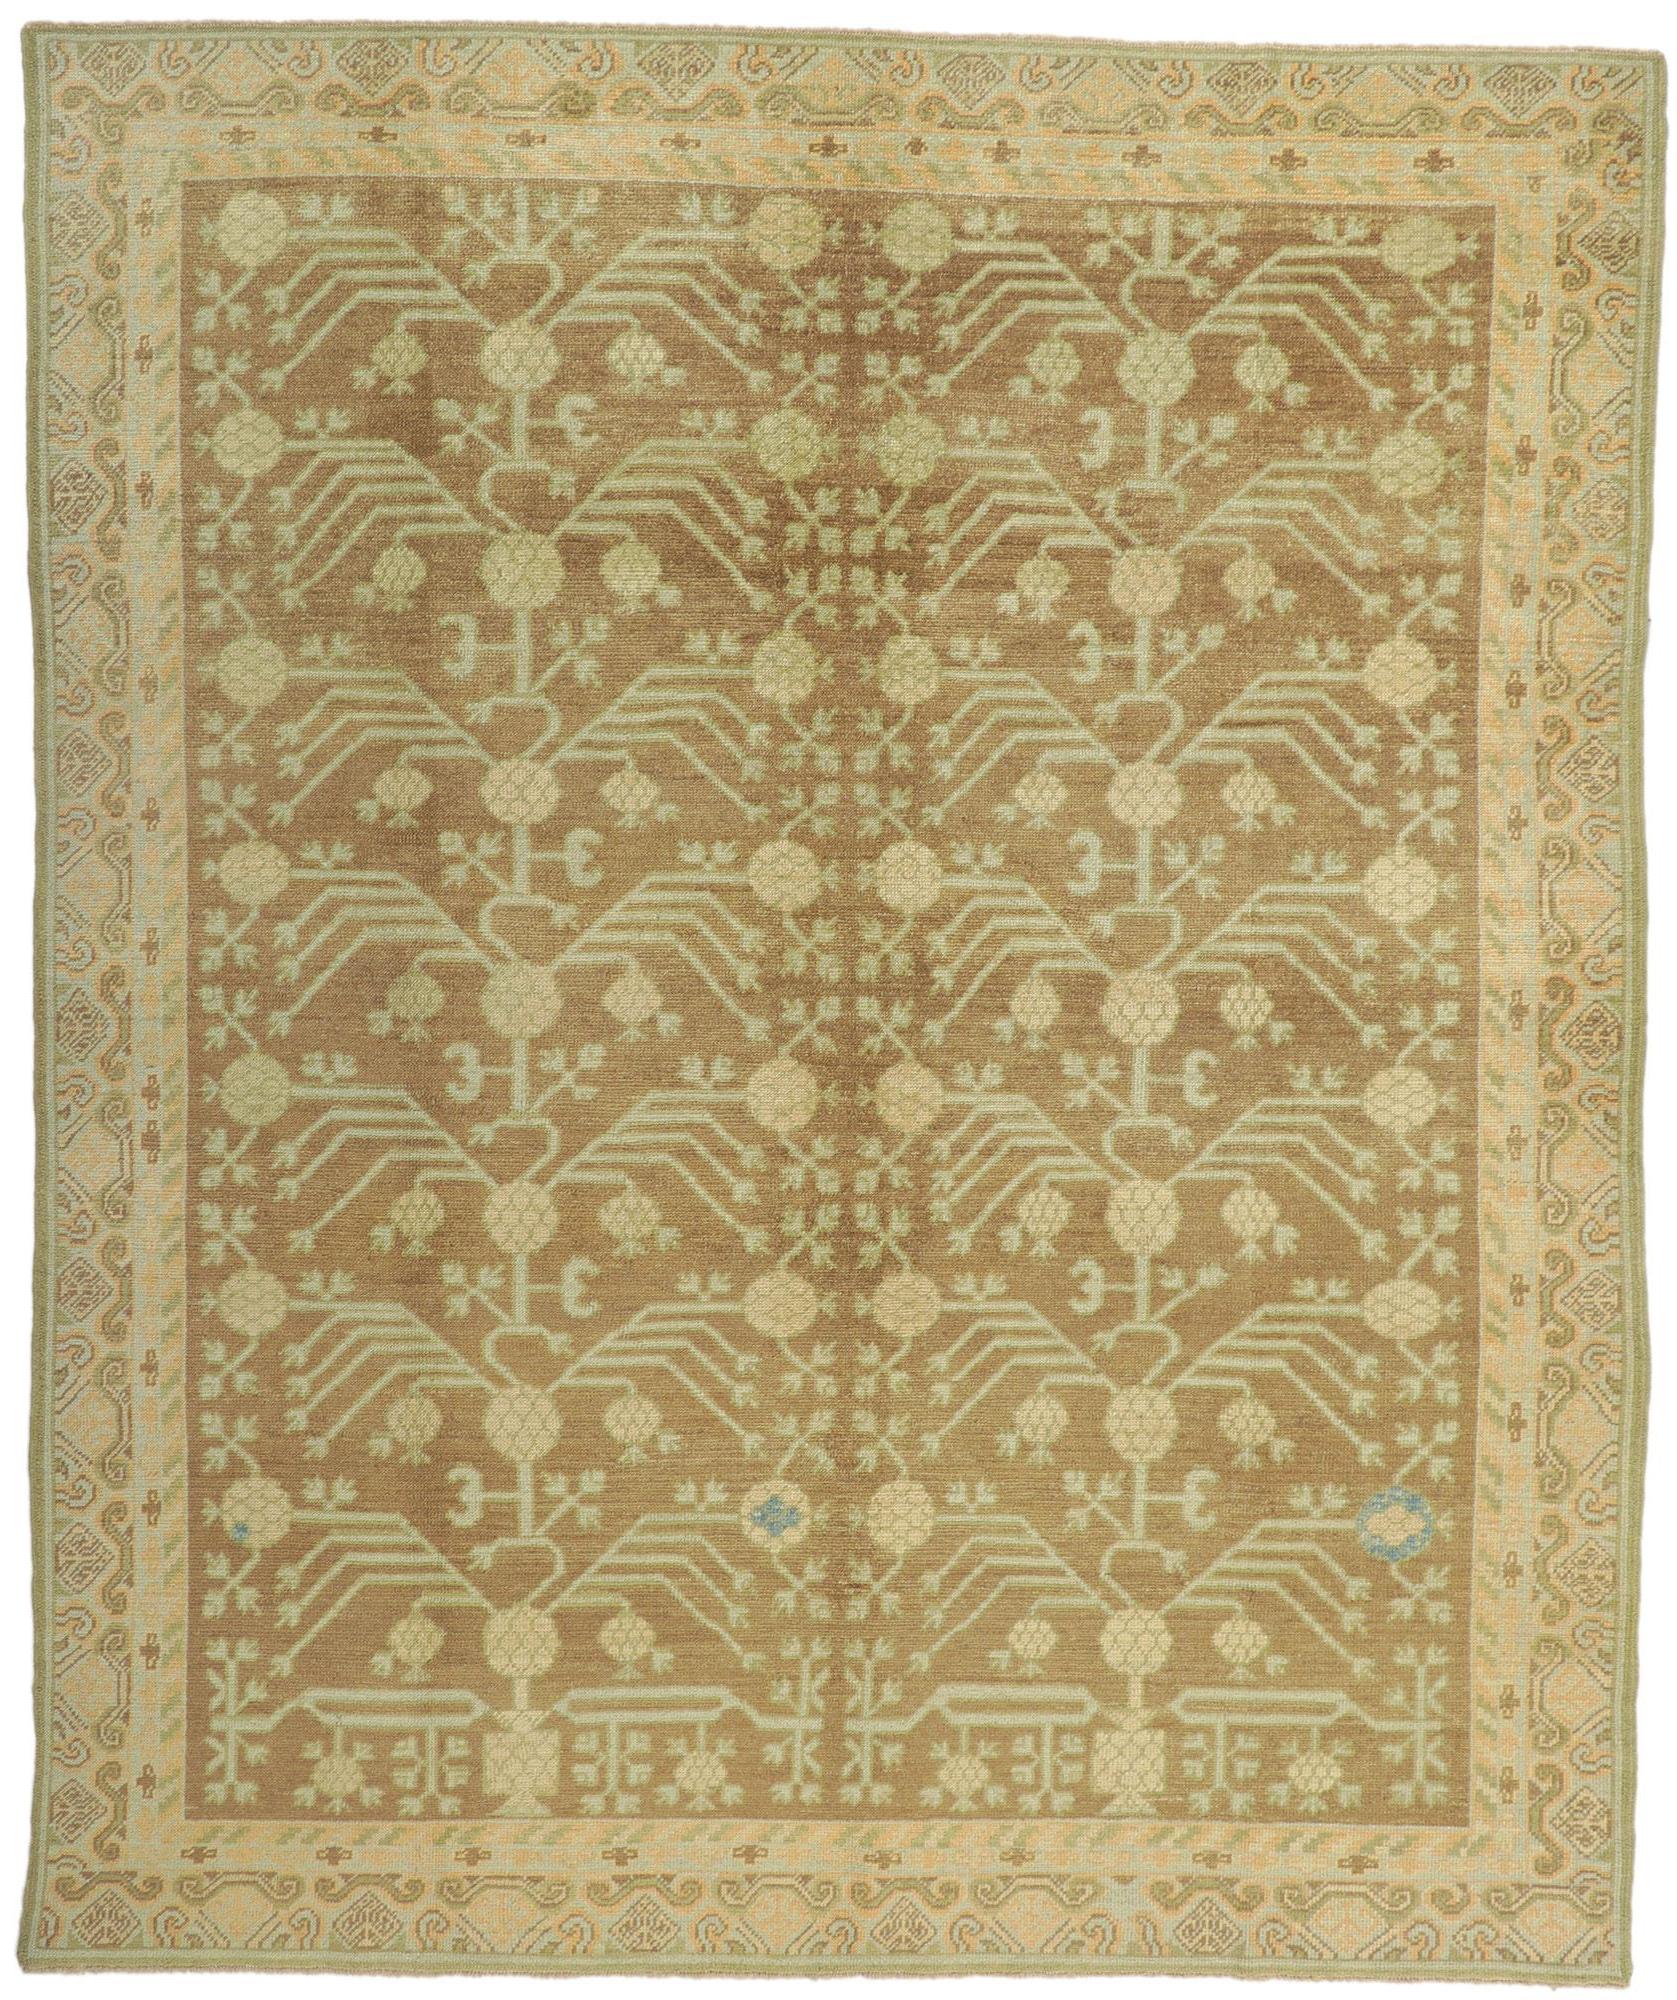 Türkischer Khotan-Teppich mit erdfarbenen Farben, neu